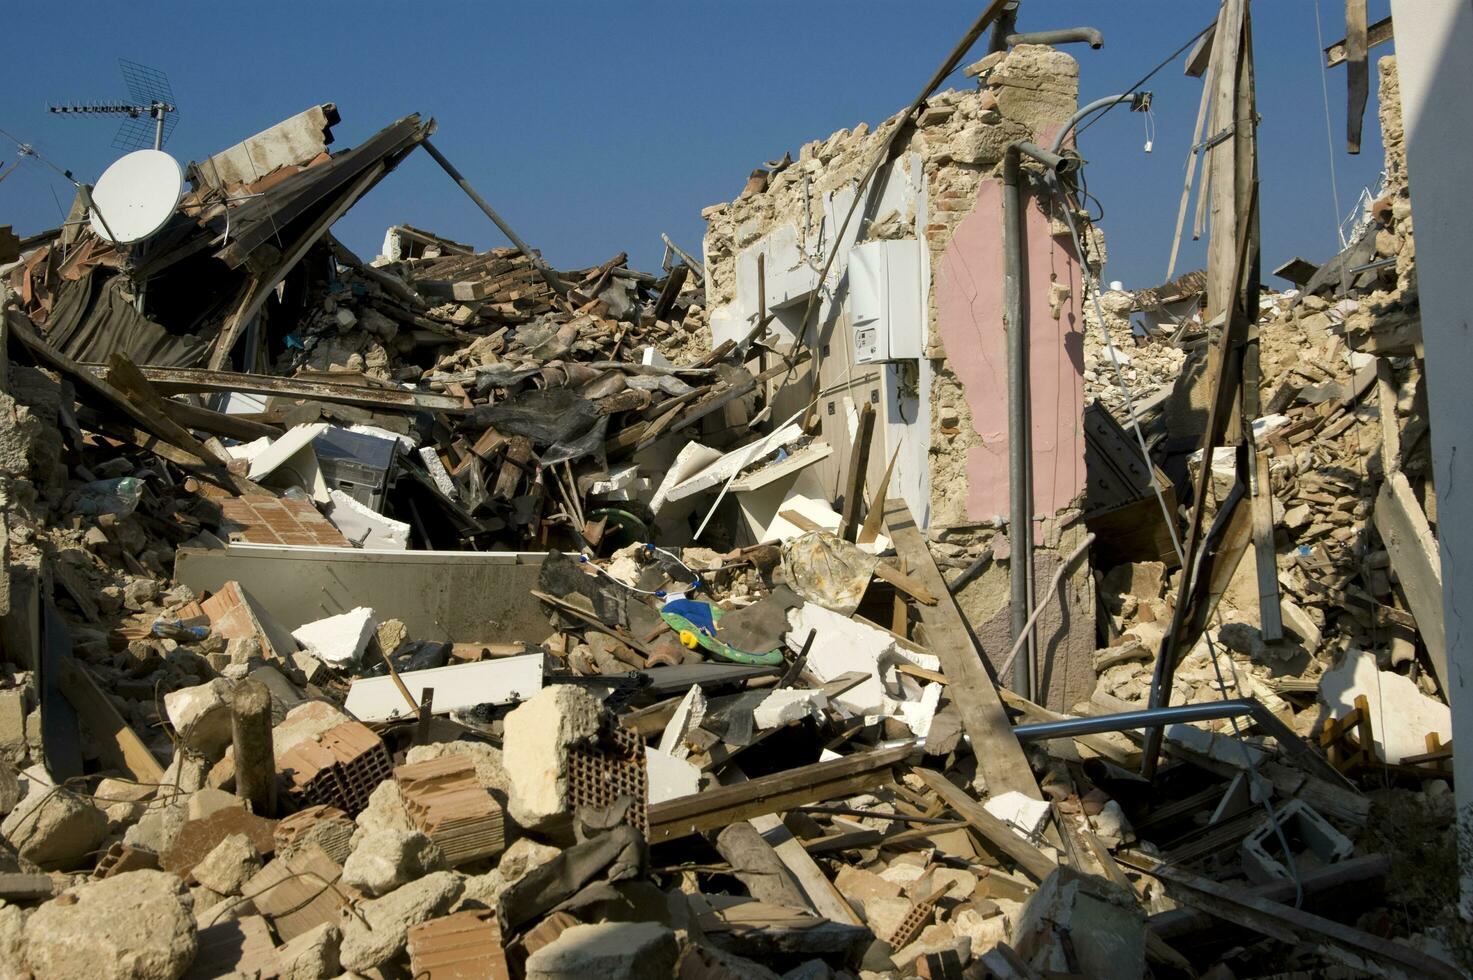 documentação fotografica del devastador terremoto nell'italia centrale foto